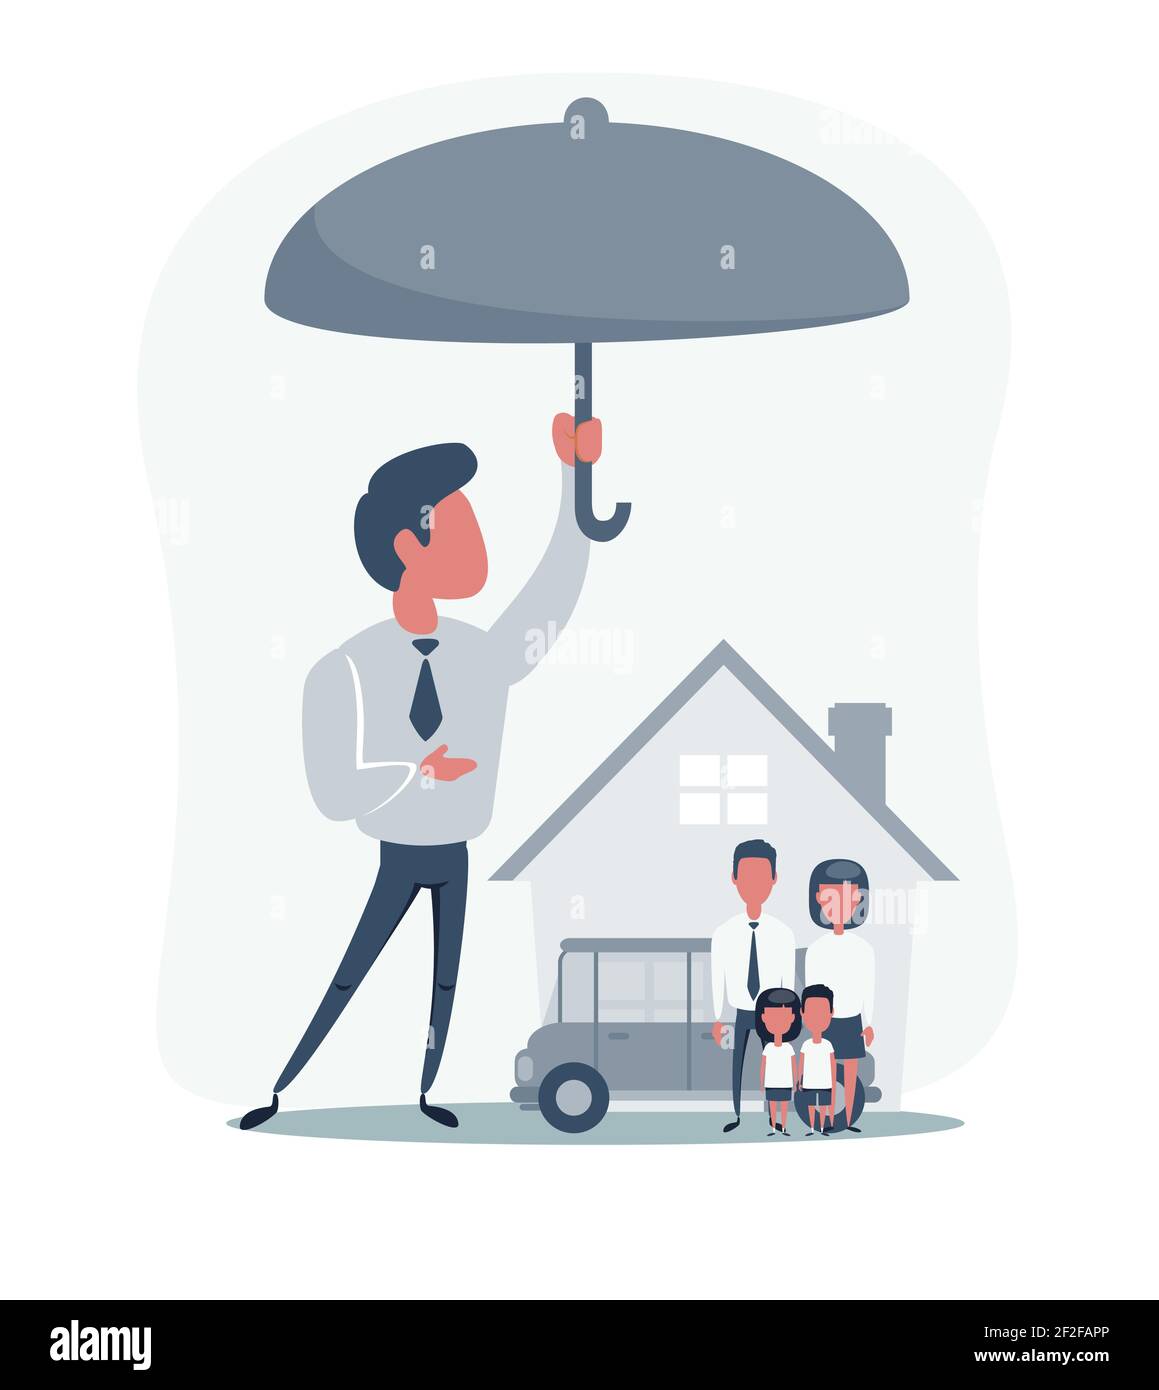 Ein Auto Unter Schutz Durch Regenschirm, Anderer - Ohne Versicherung Stock  Abbildung - Illustration von konzept, auslegung: 72264431